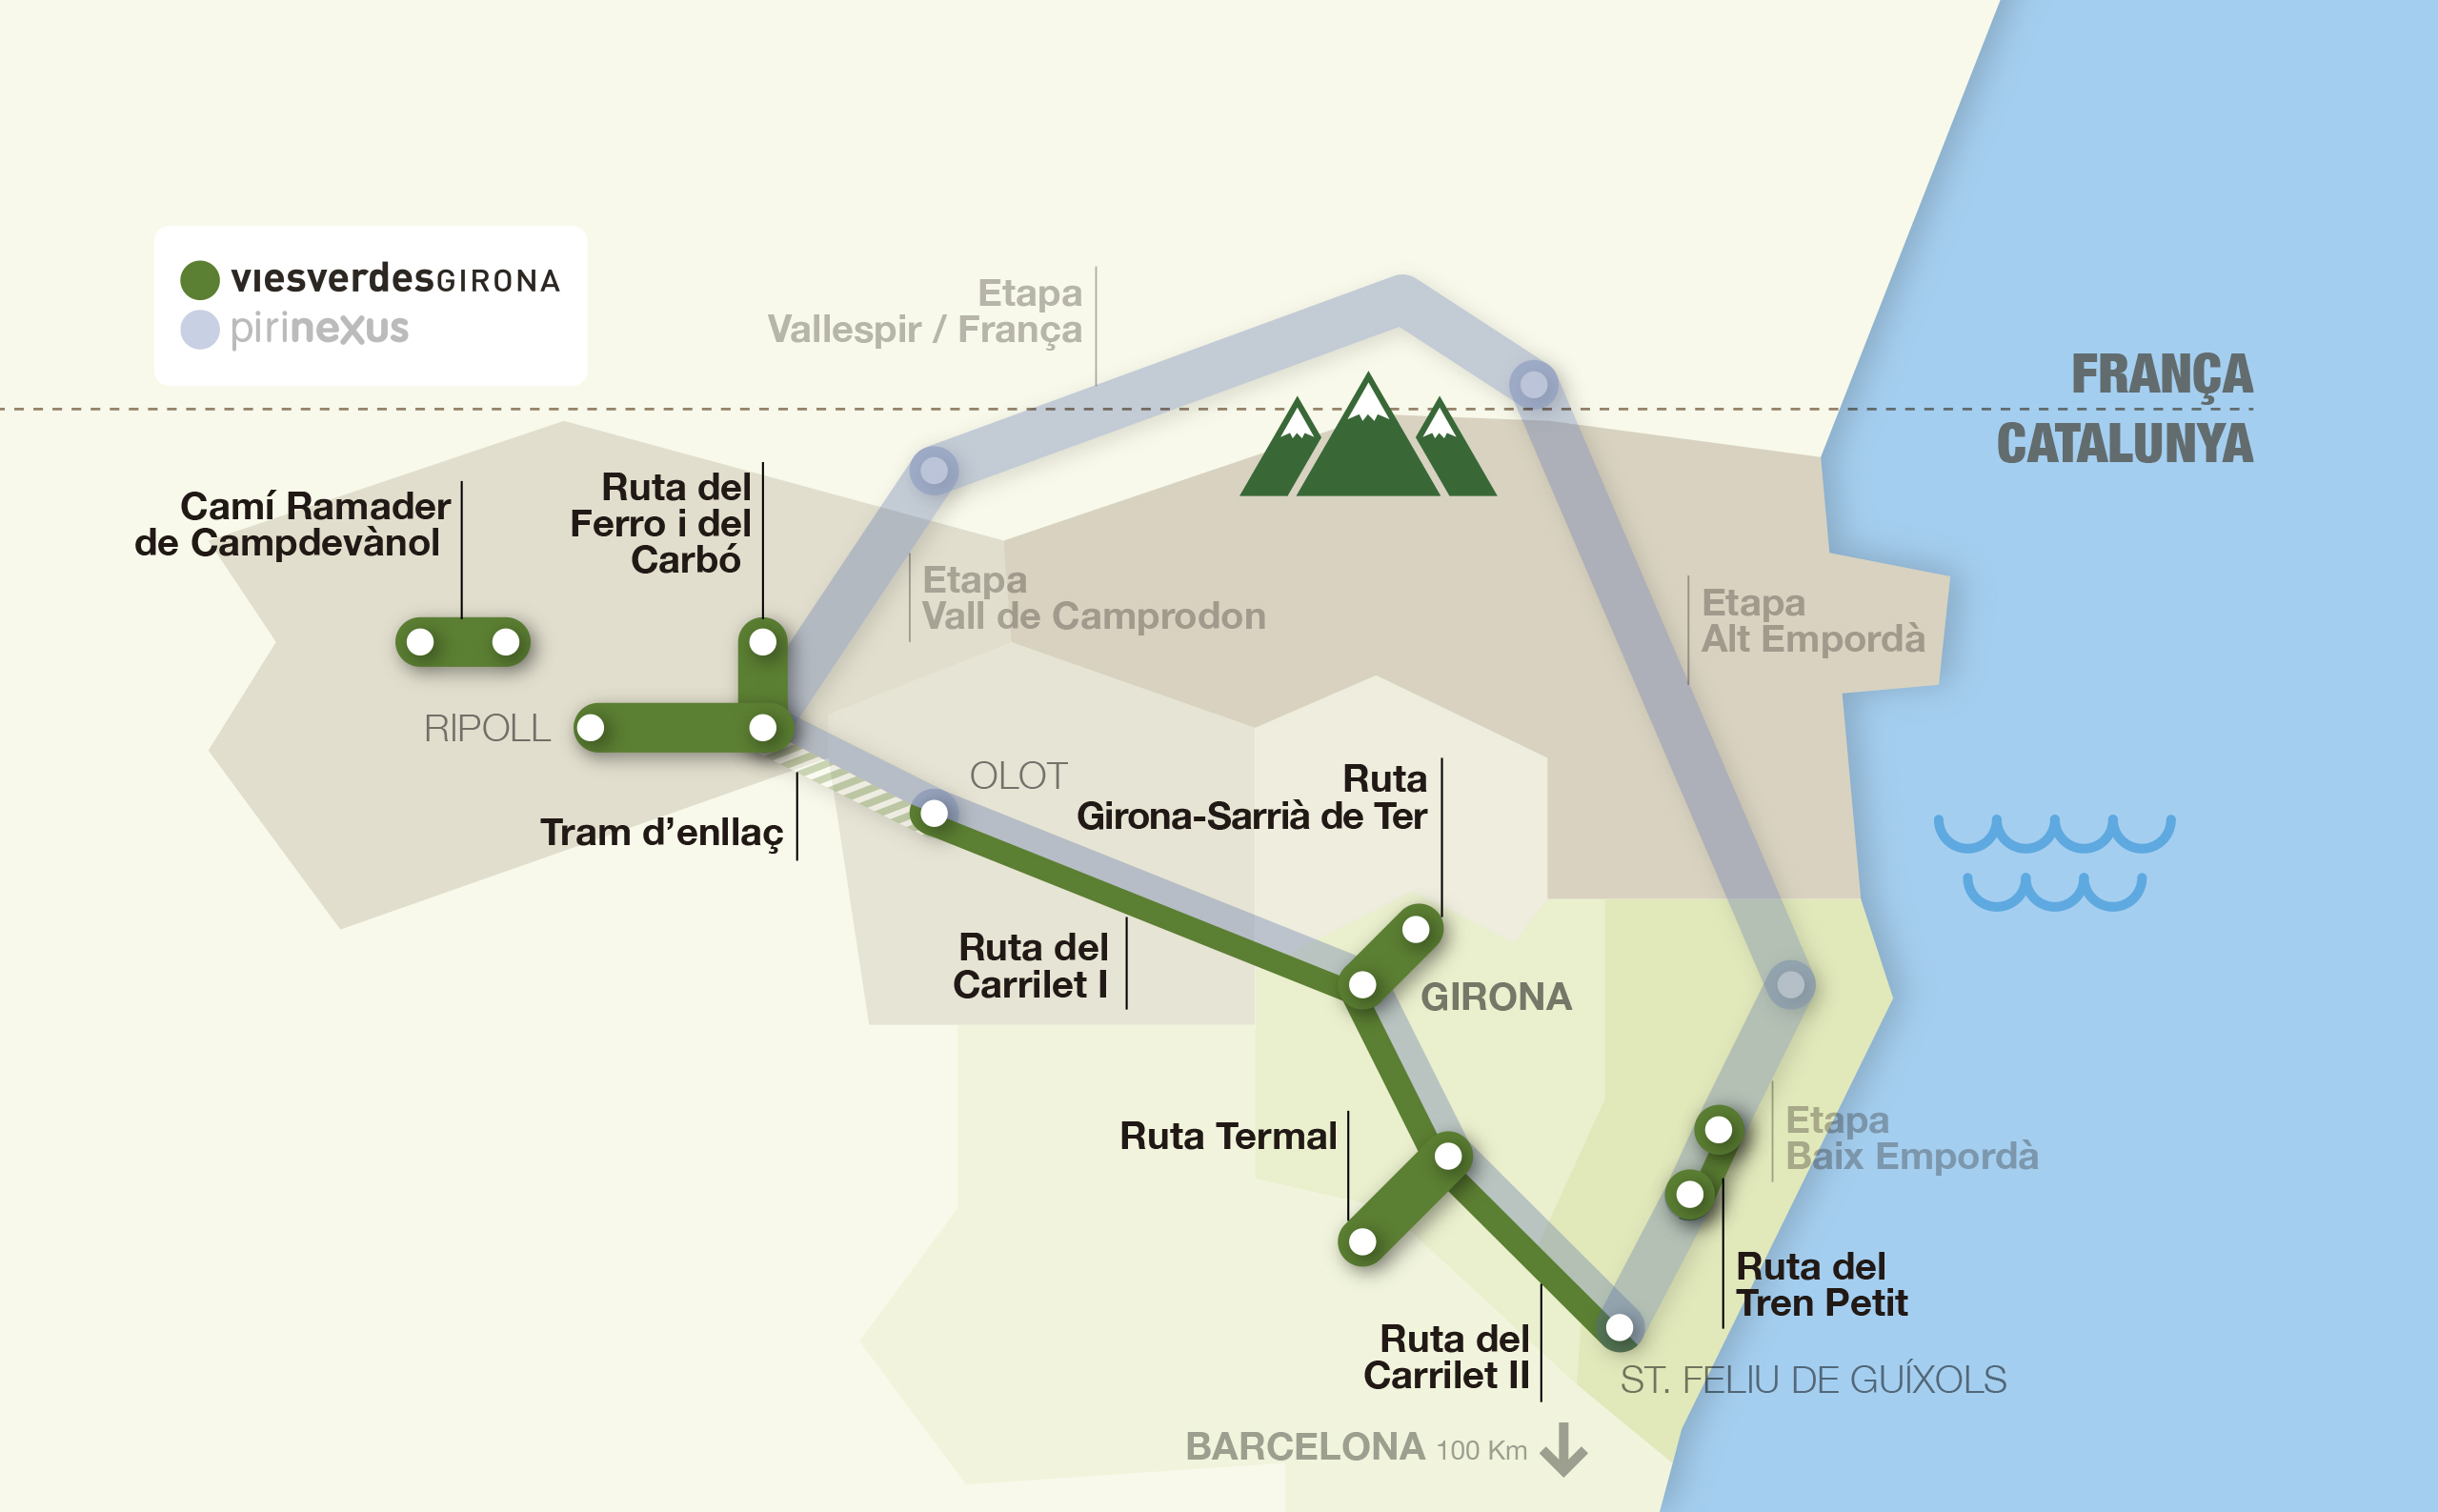 Mapa interactiu de les rutes vies verdes i pirinexus